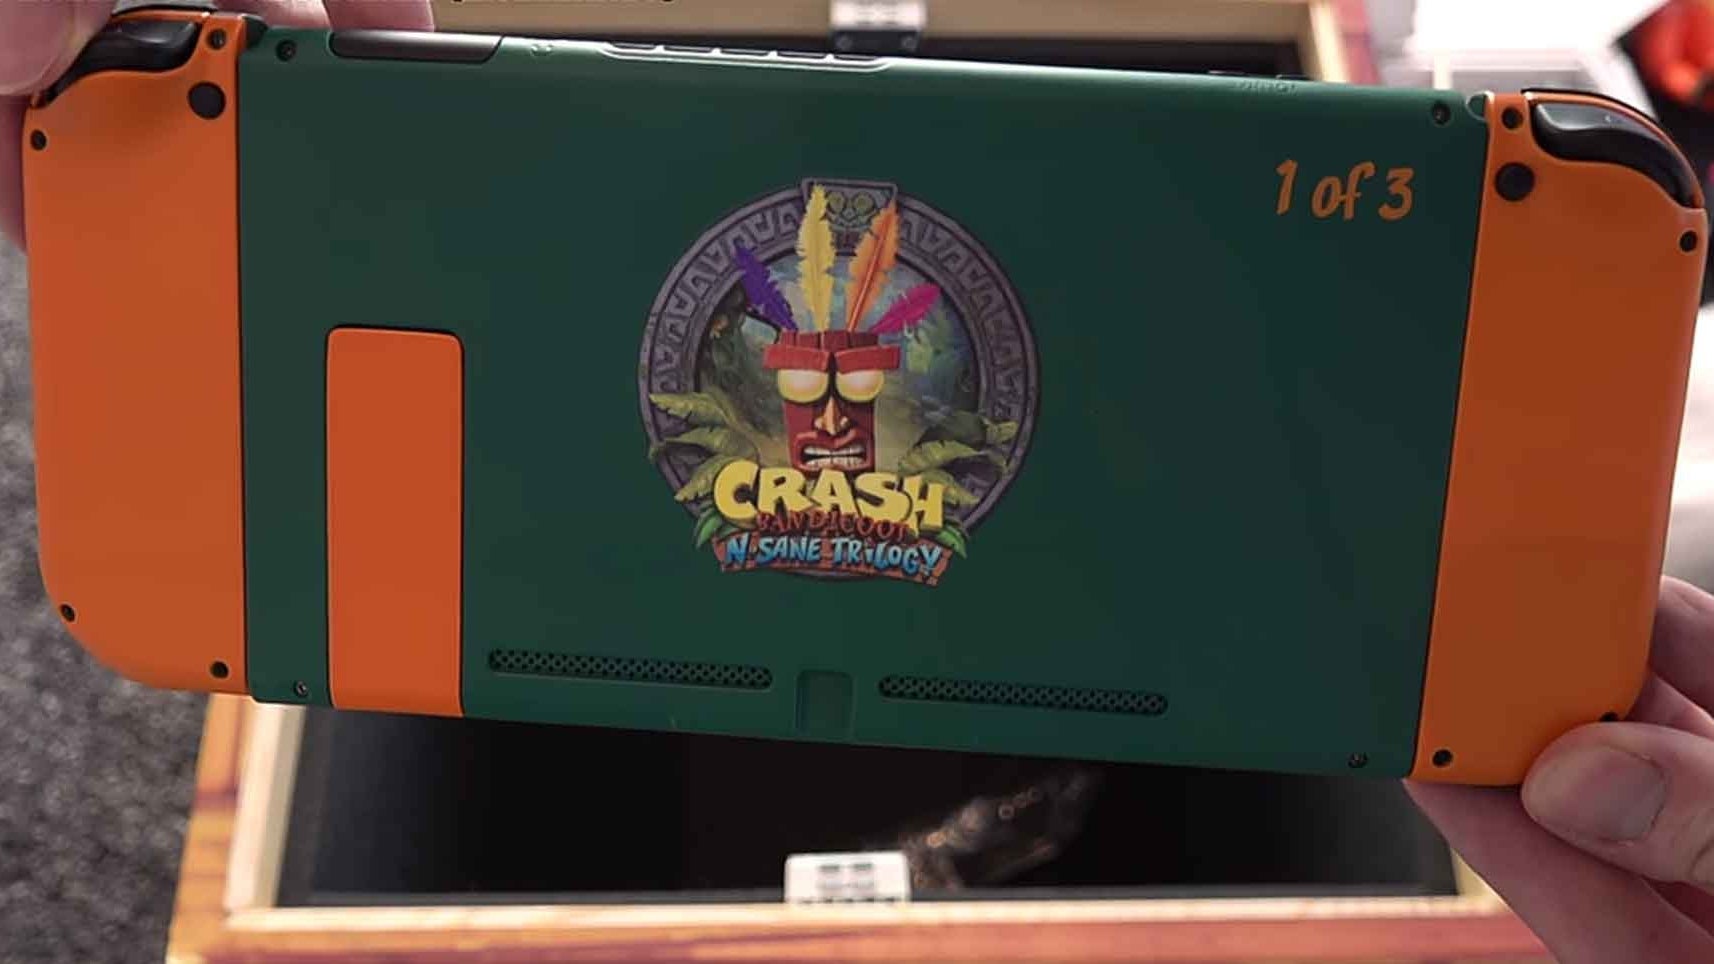 Immagine di Ecco delle meravigliose console Nintendo Switch a tema Crash Bandicoot N. Sane Trilogy